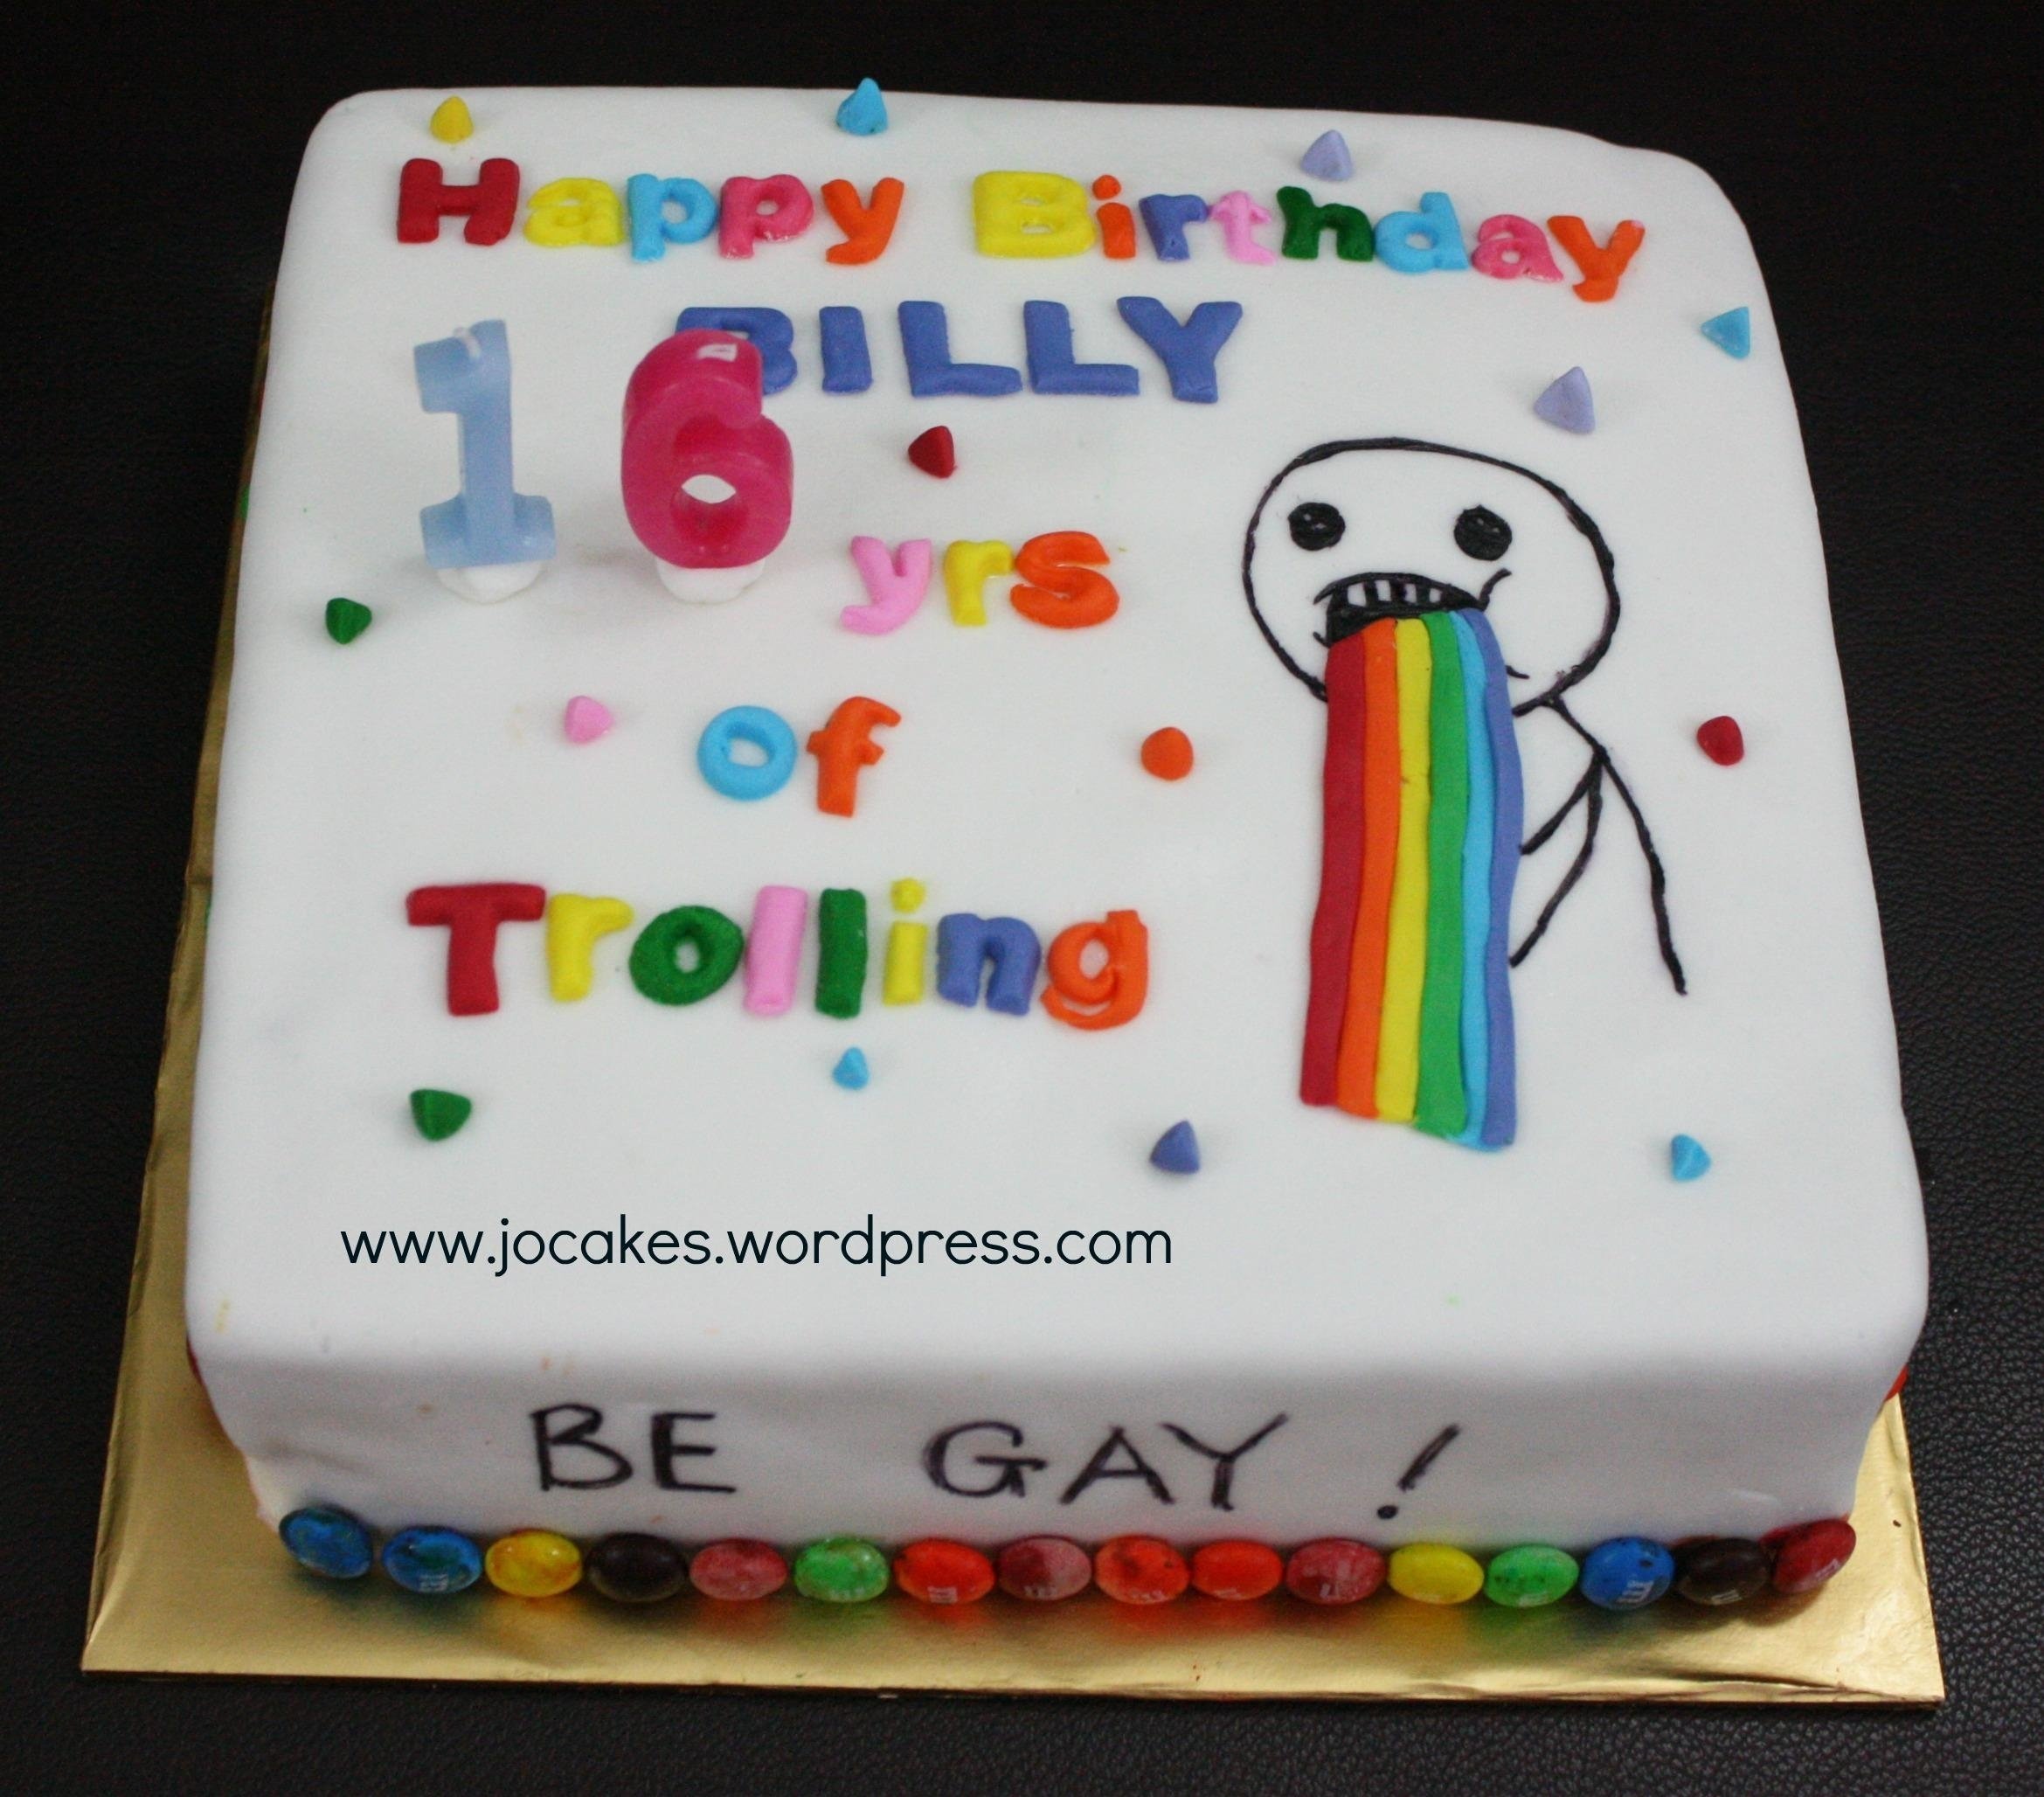 10 Amazing 16 Year Old Boy Birthday Ideas birthday cake for a 16 year old boy jocakes cake ideas 1 2022